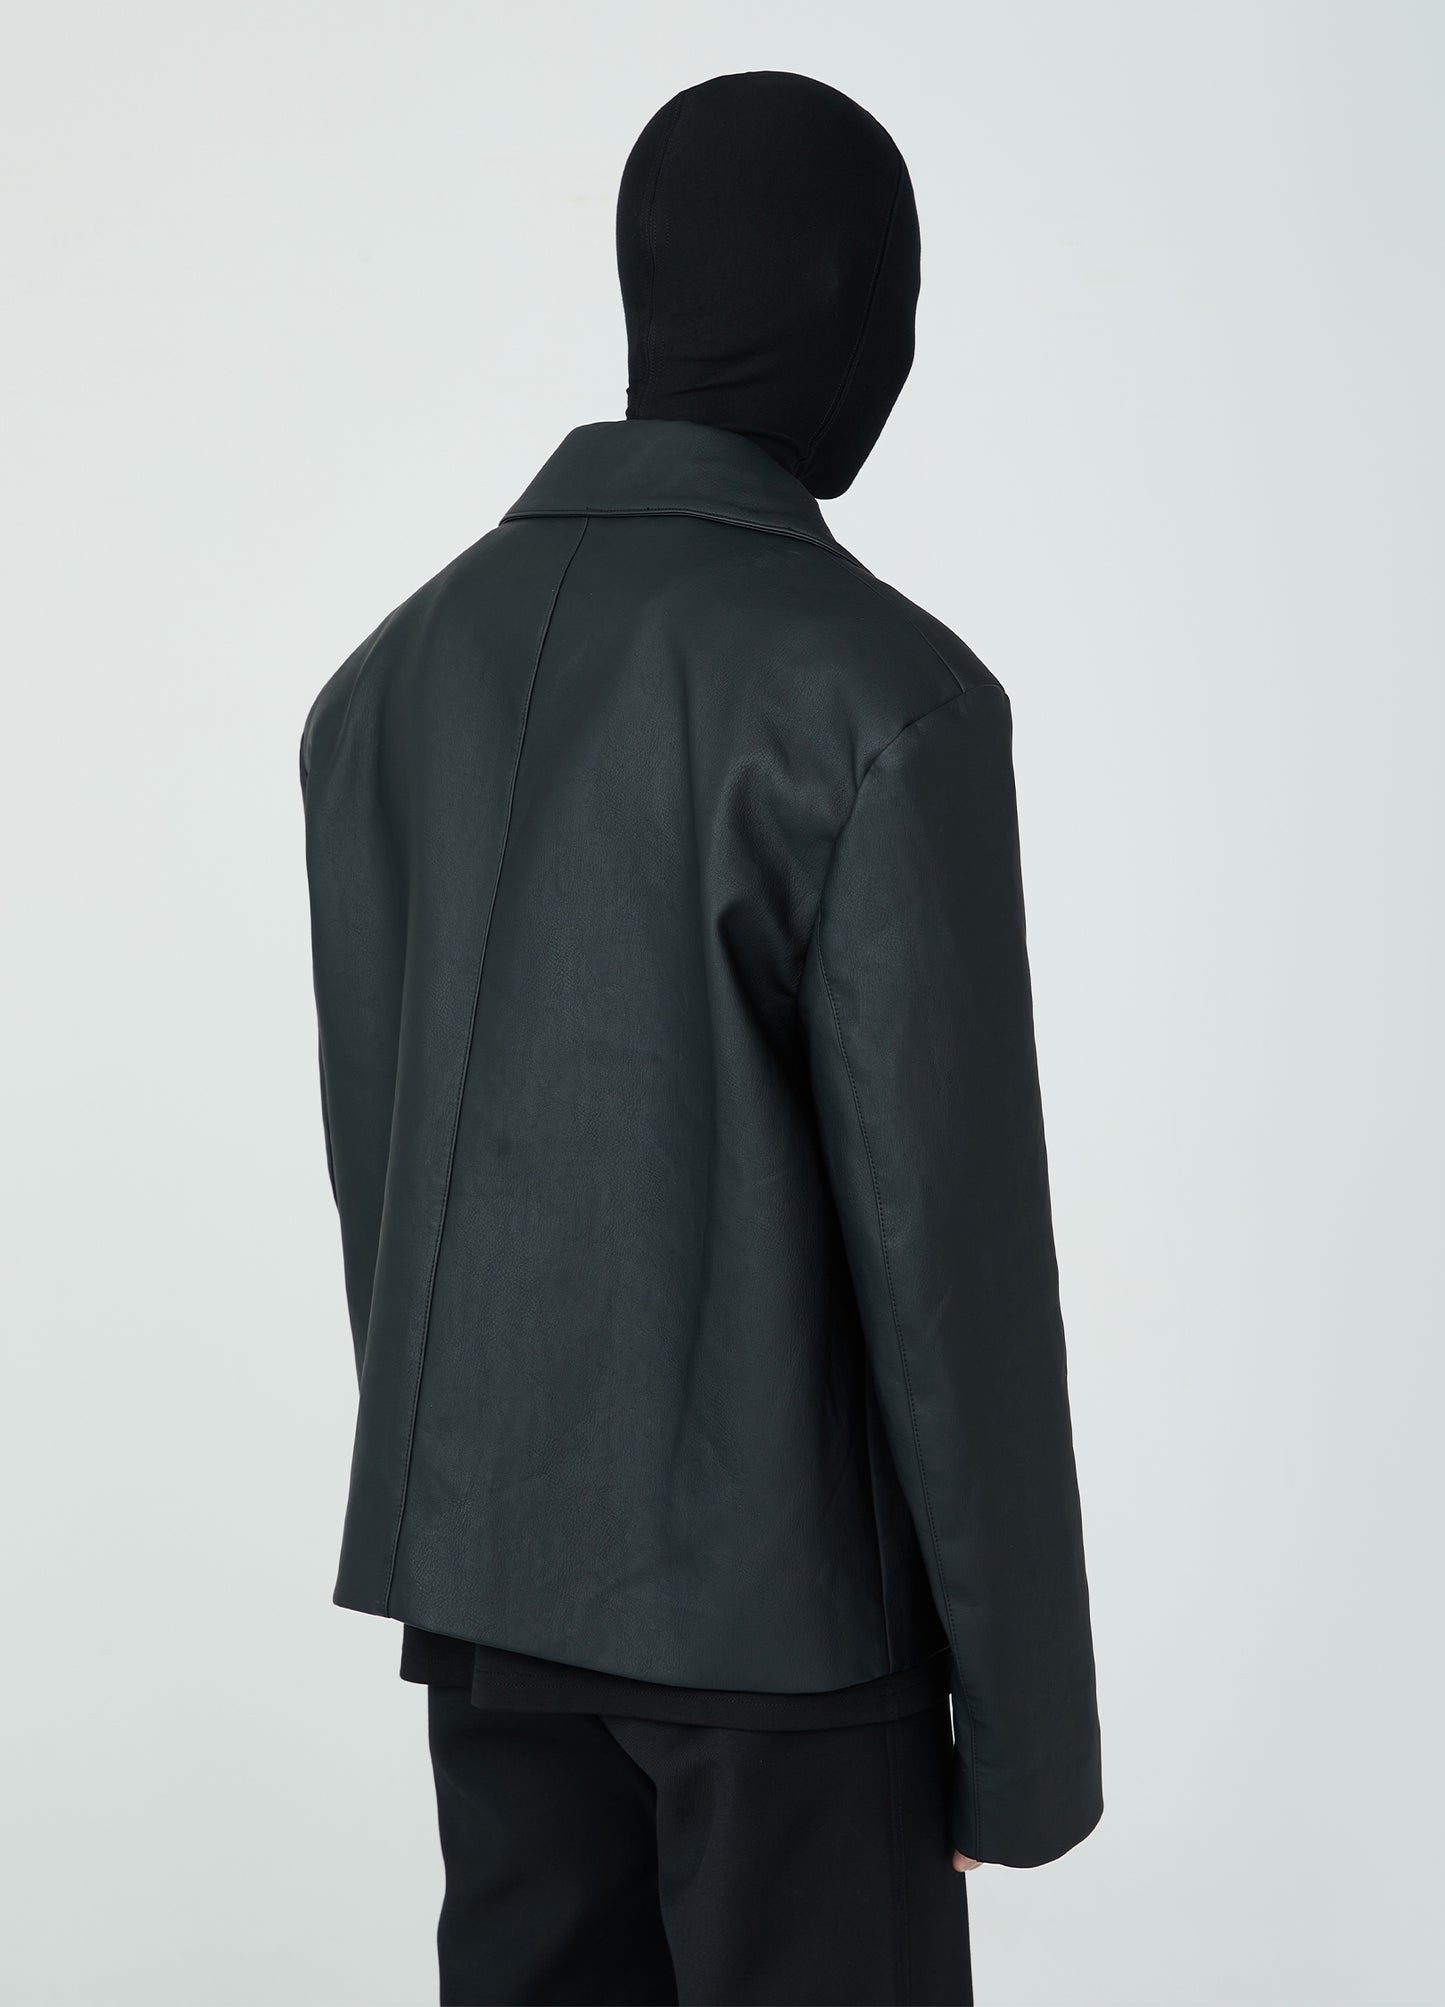 Minimal Leather jacket